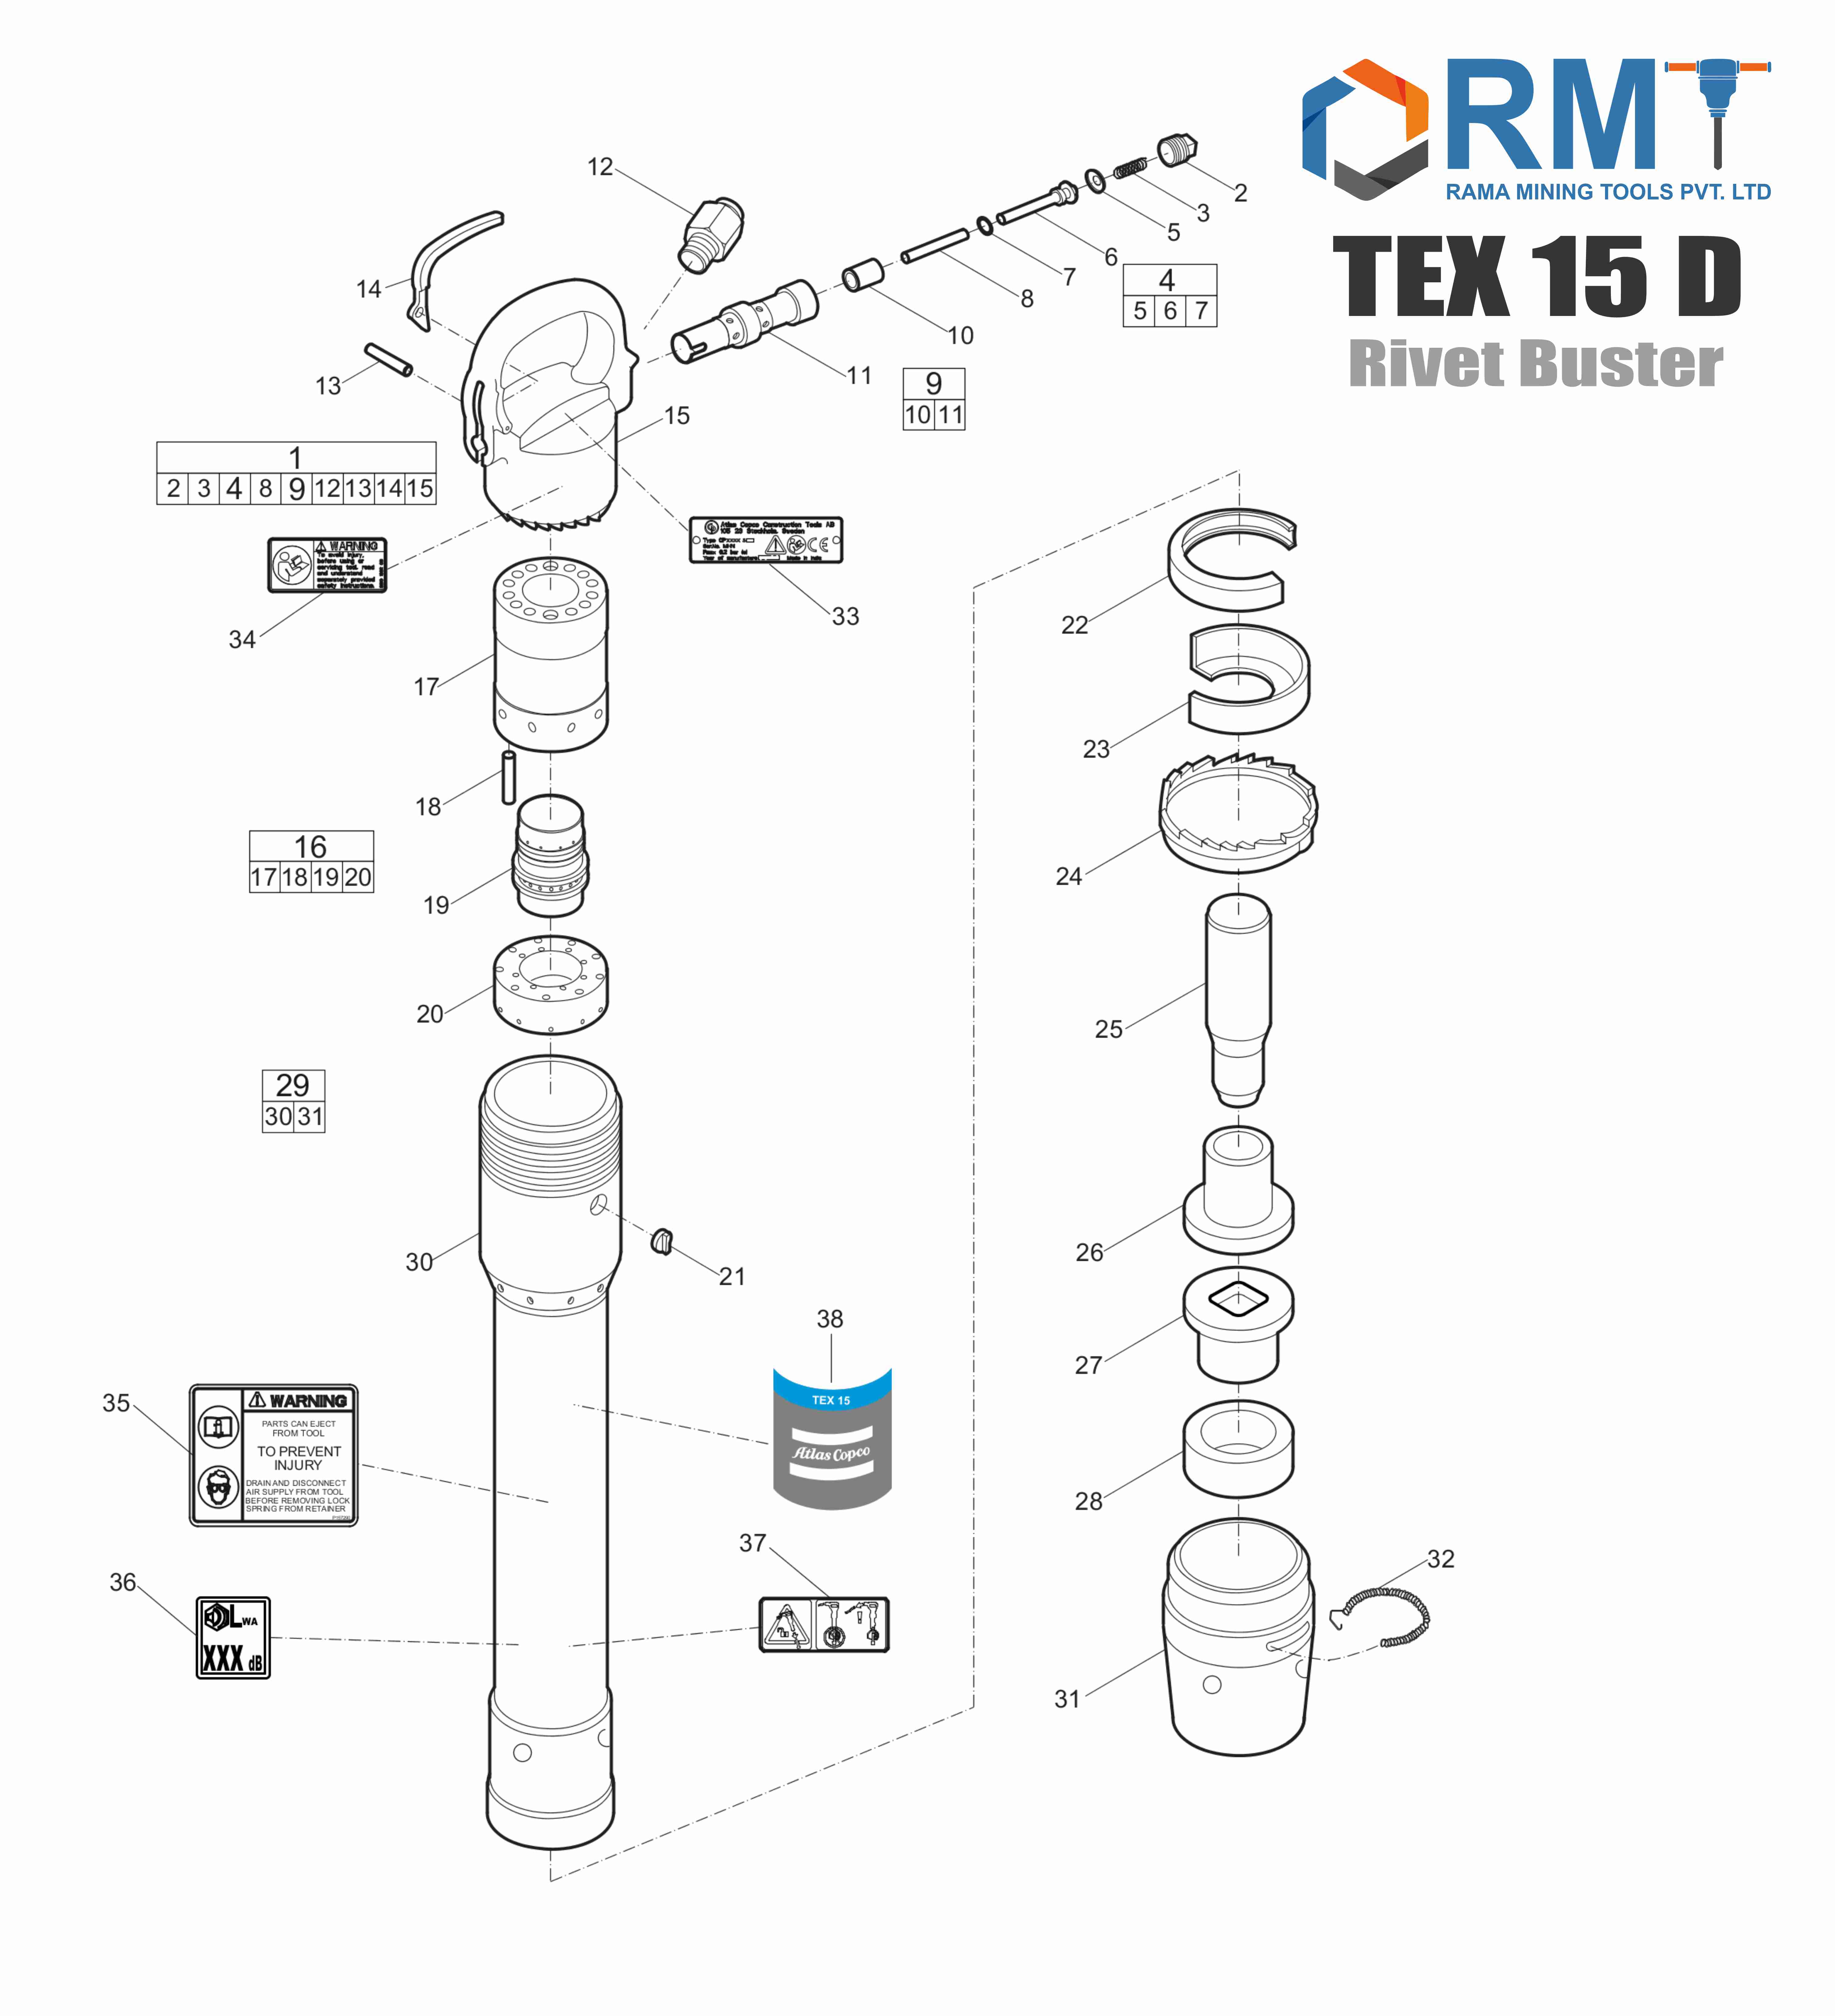 TEX 15 D Rivet Buster